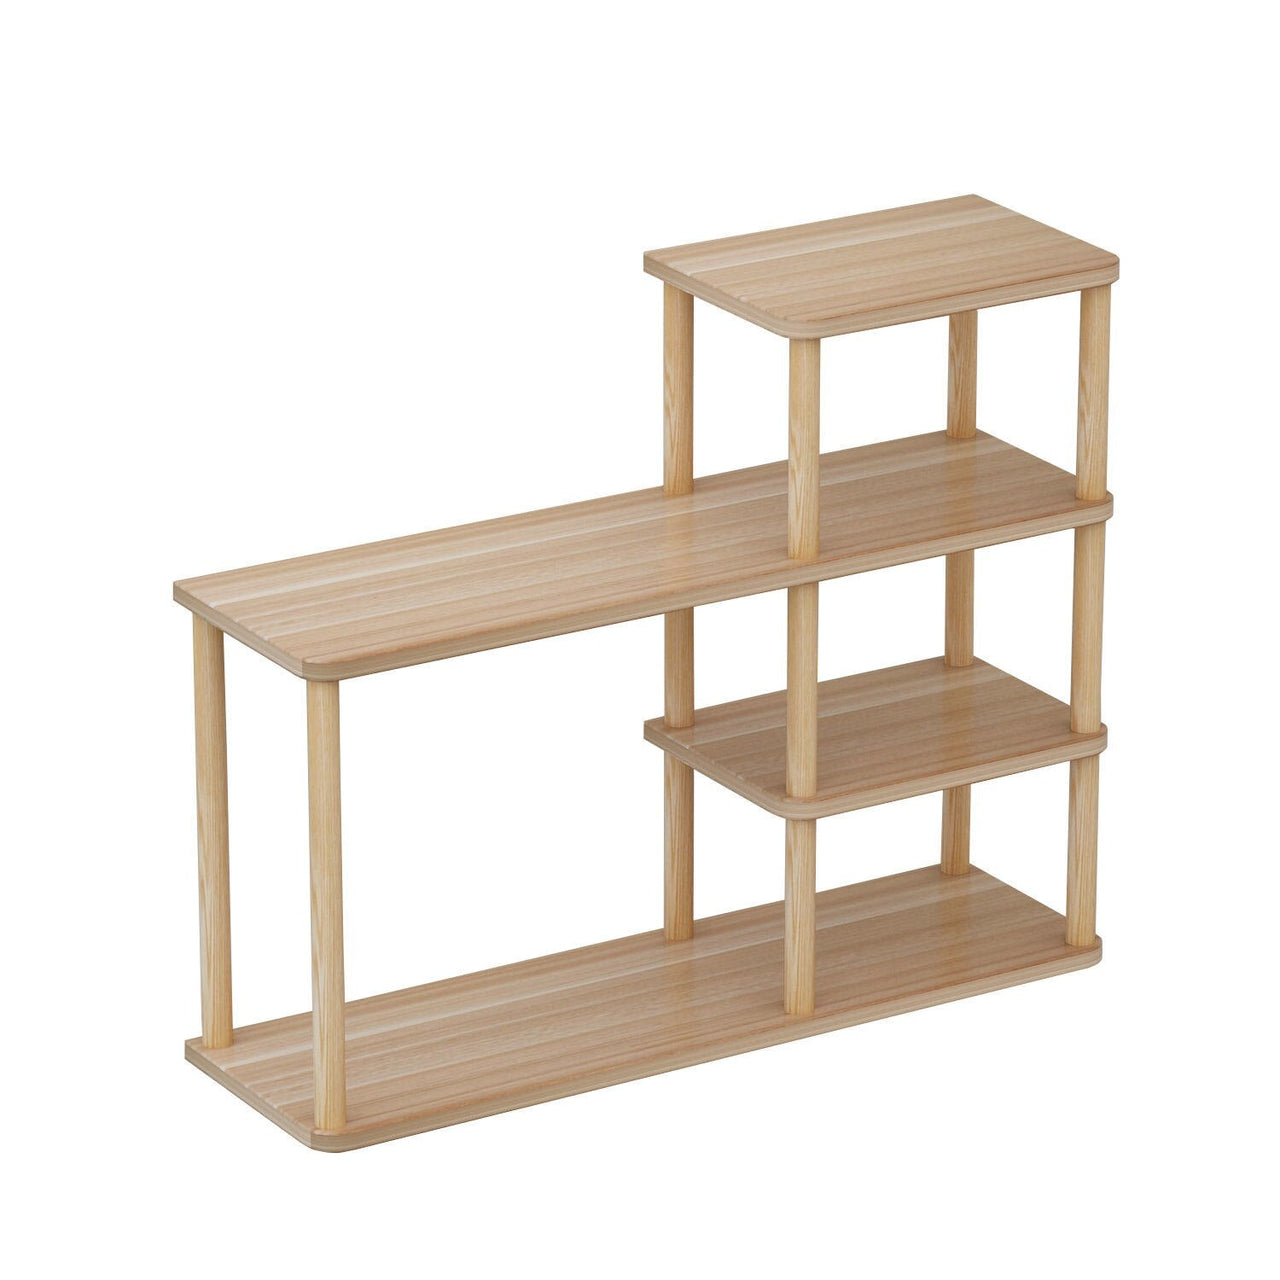 Wooden Desktop Bookshelf Organizer - Casatrail.com